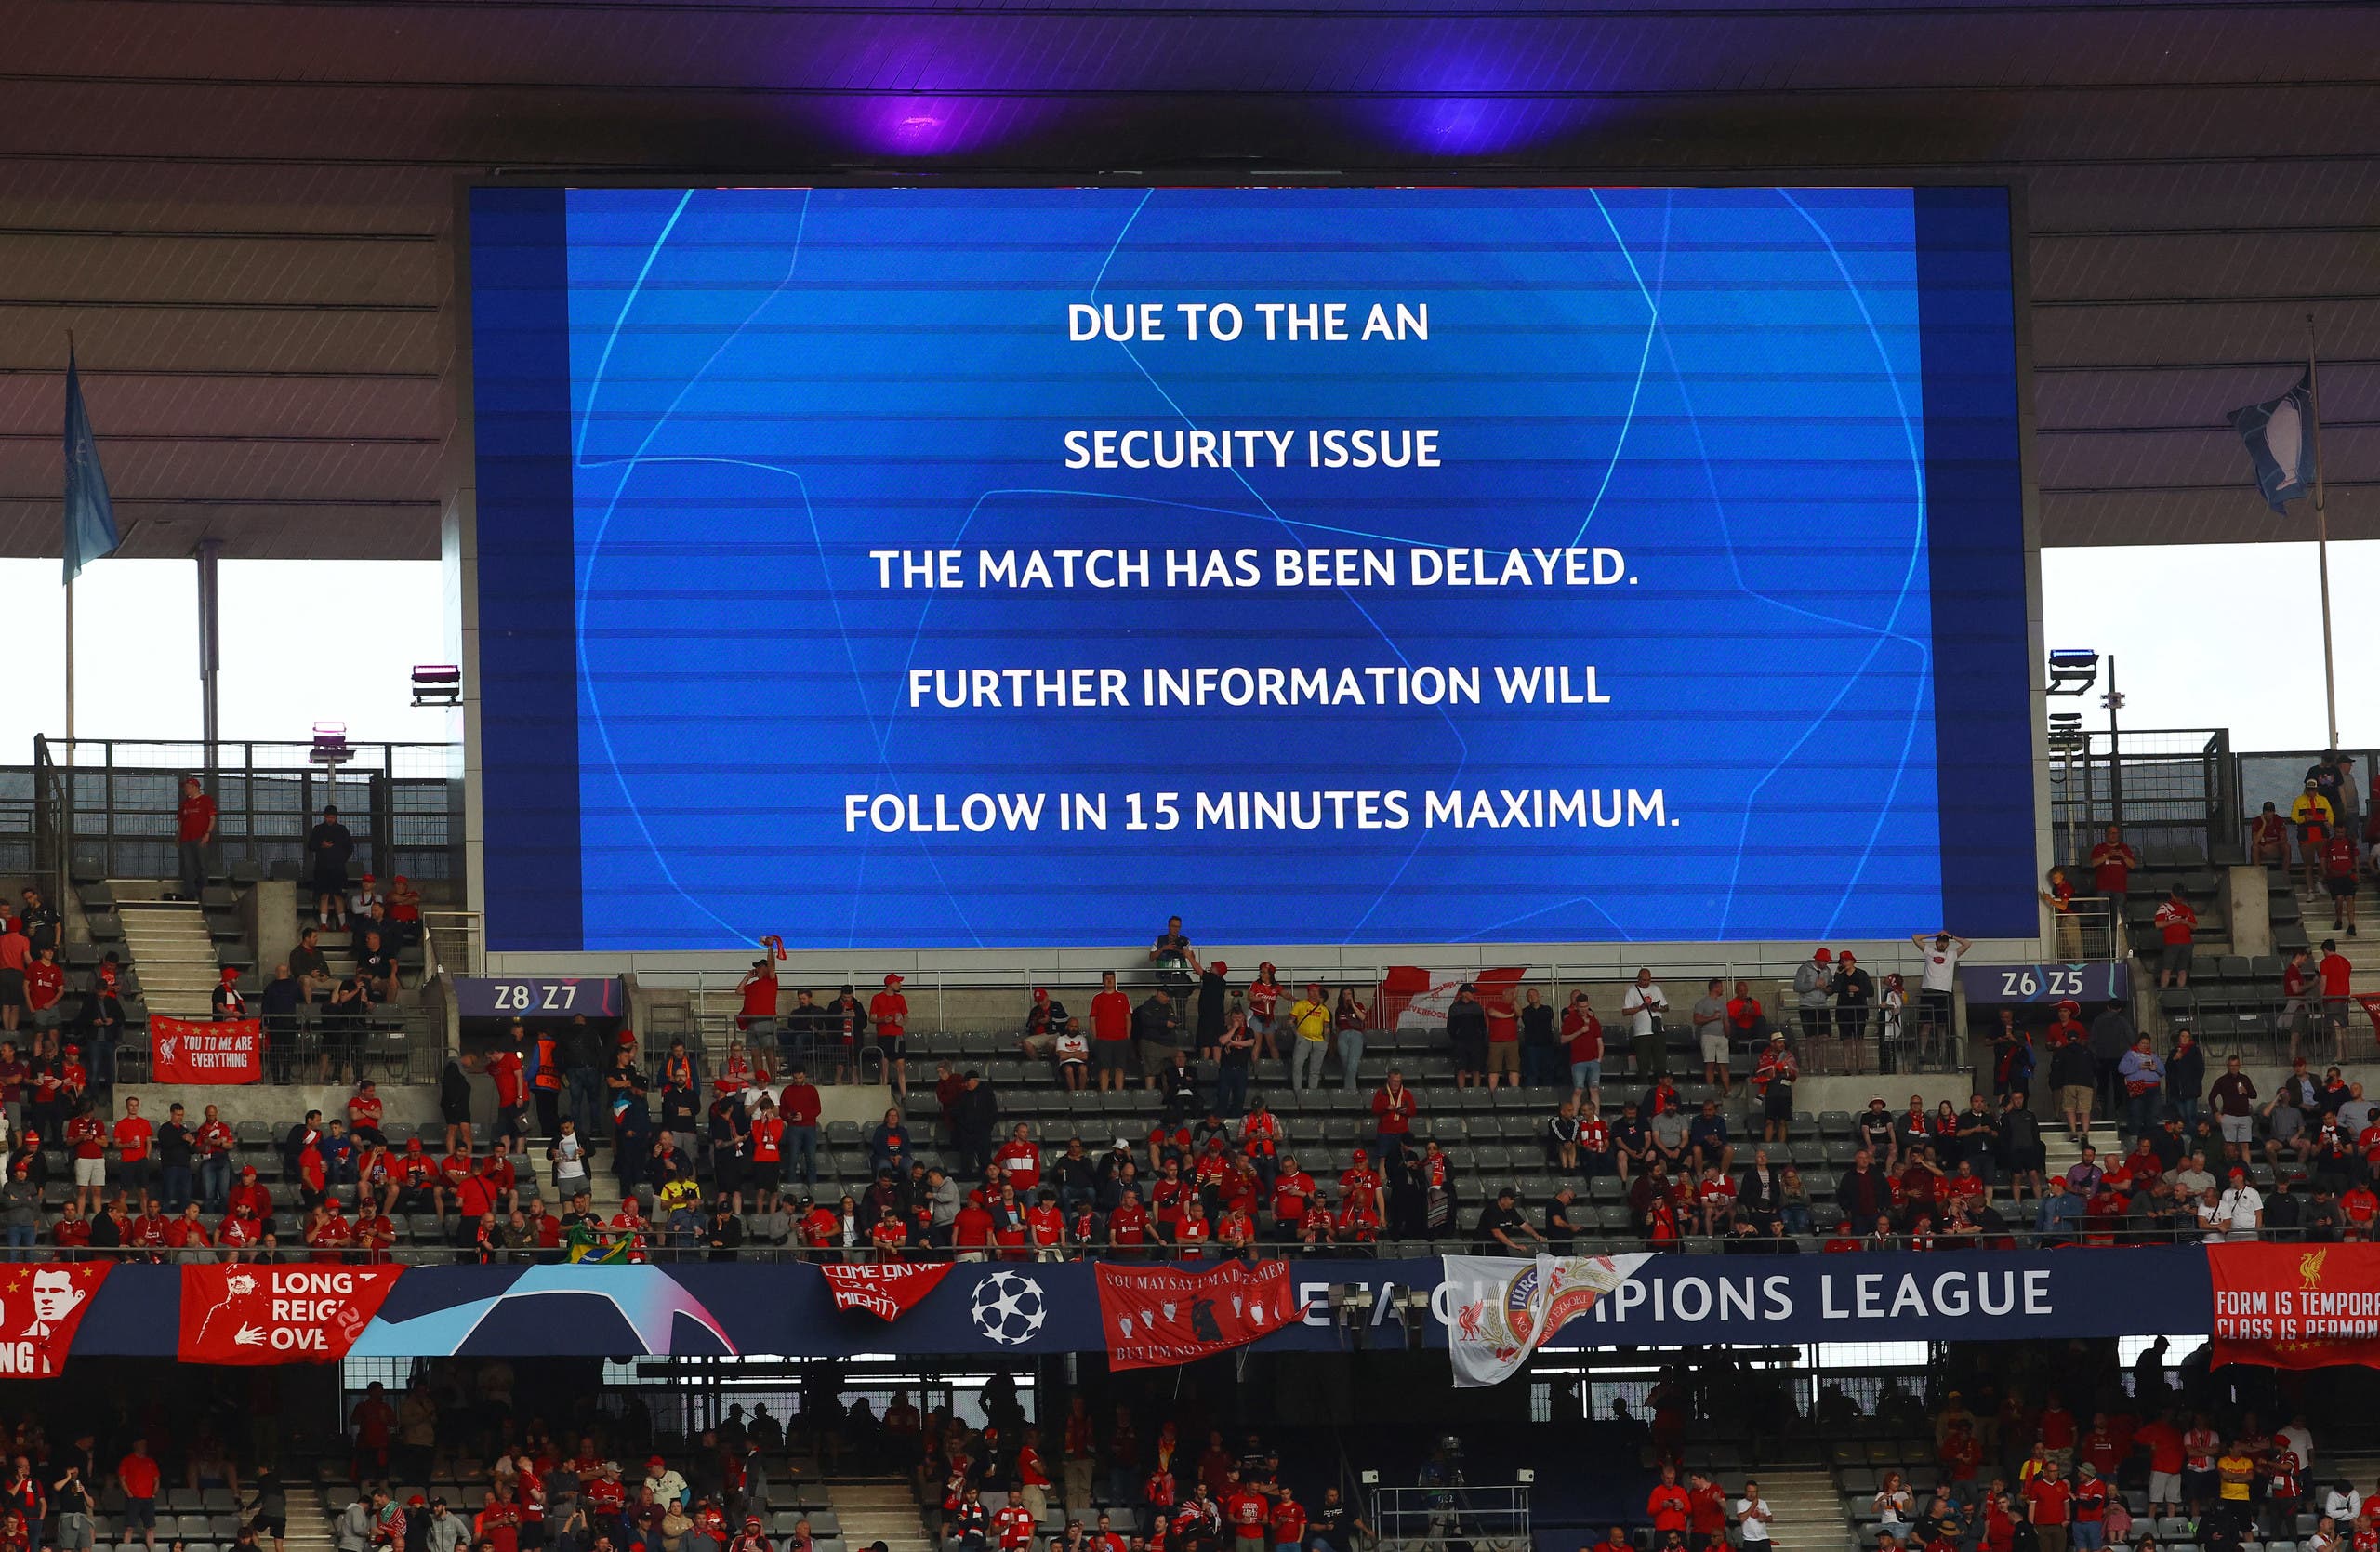 رسالة على شاشة في الملعب تعلن تاخير المباراة بسبب مشاكل أمنية